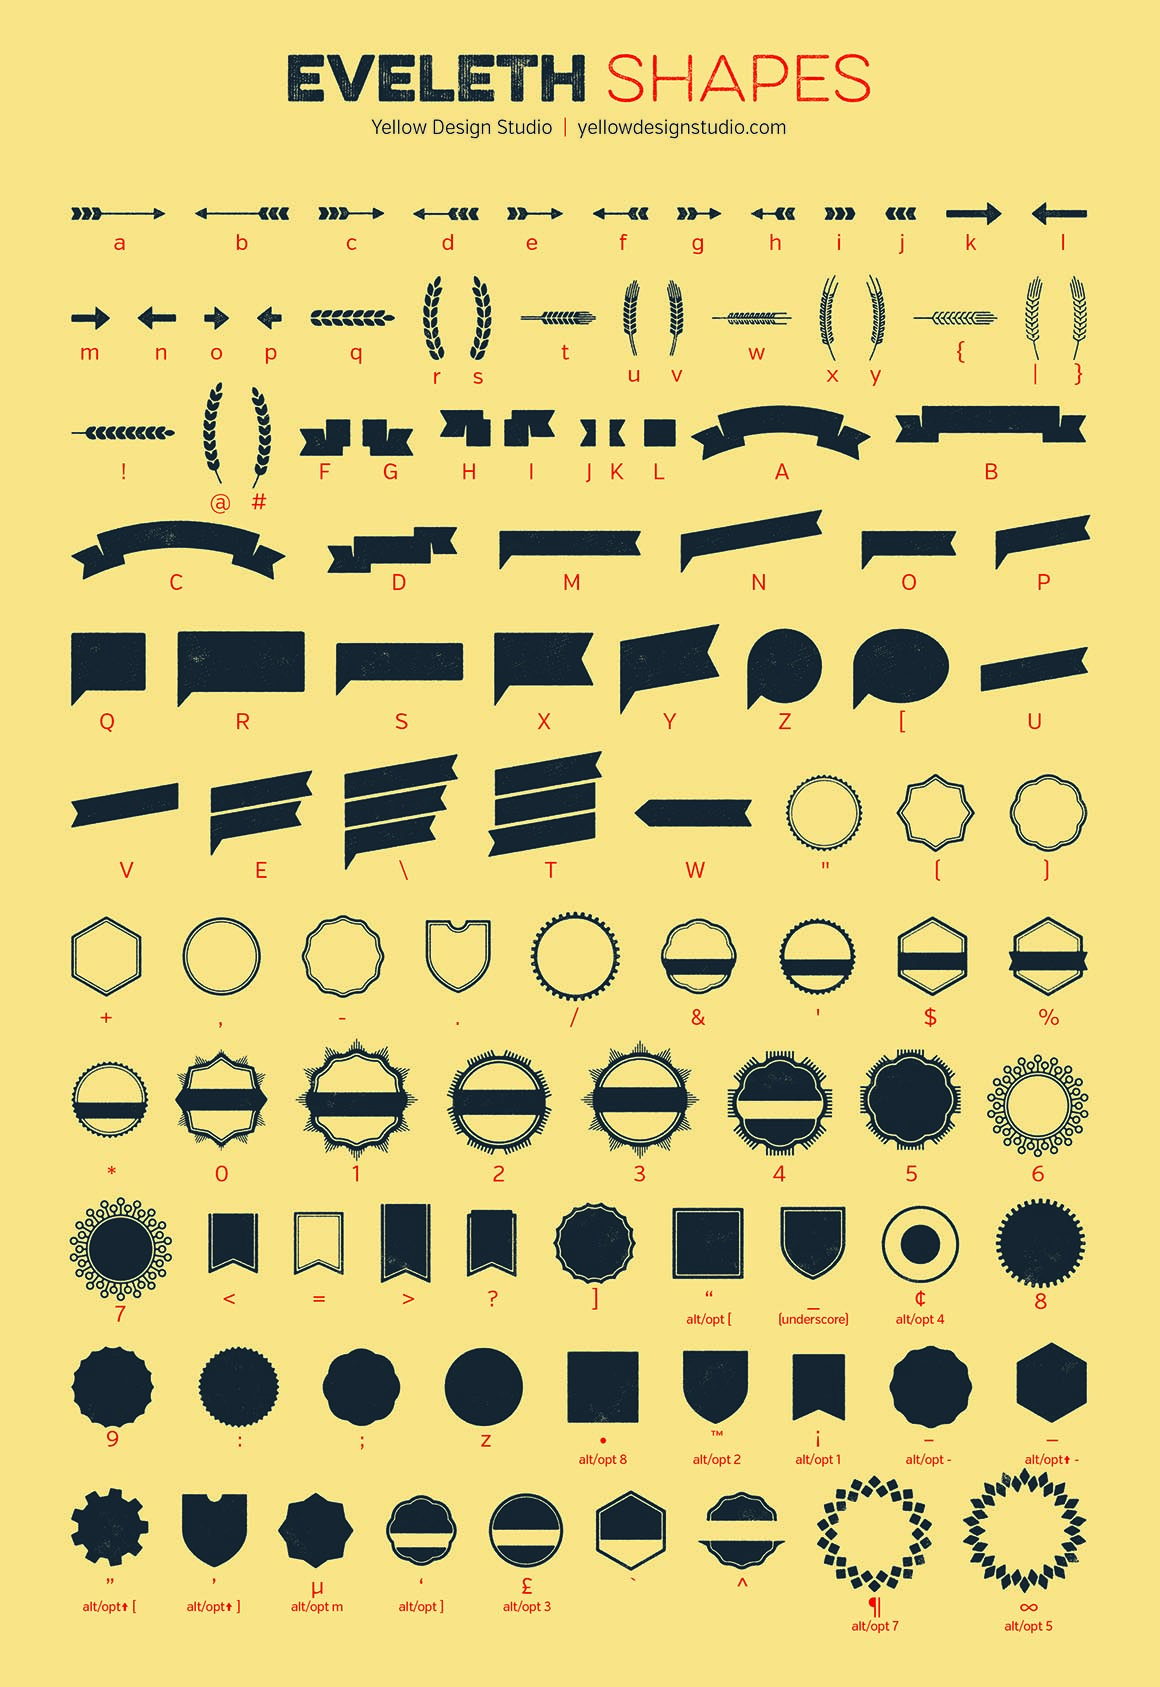 Eveleth Icons font